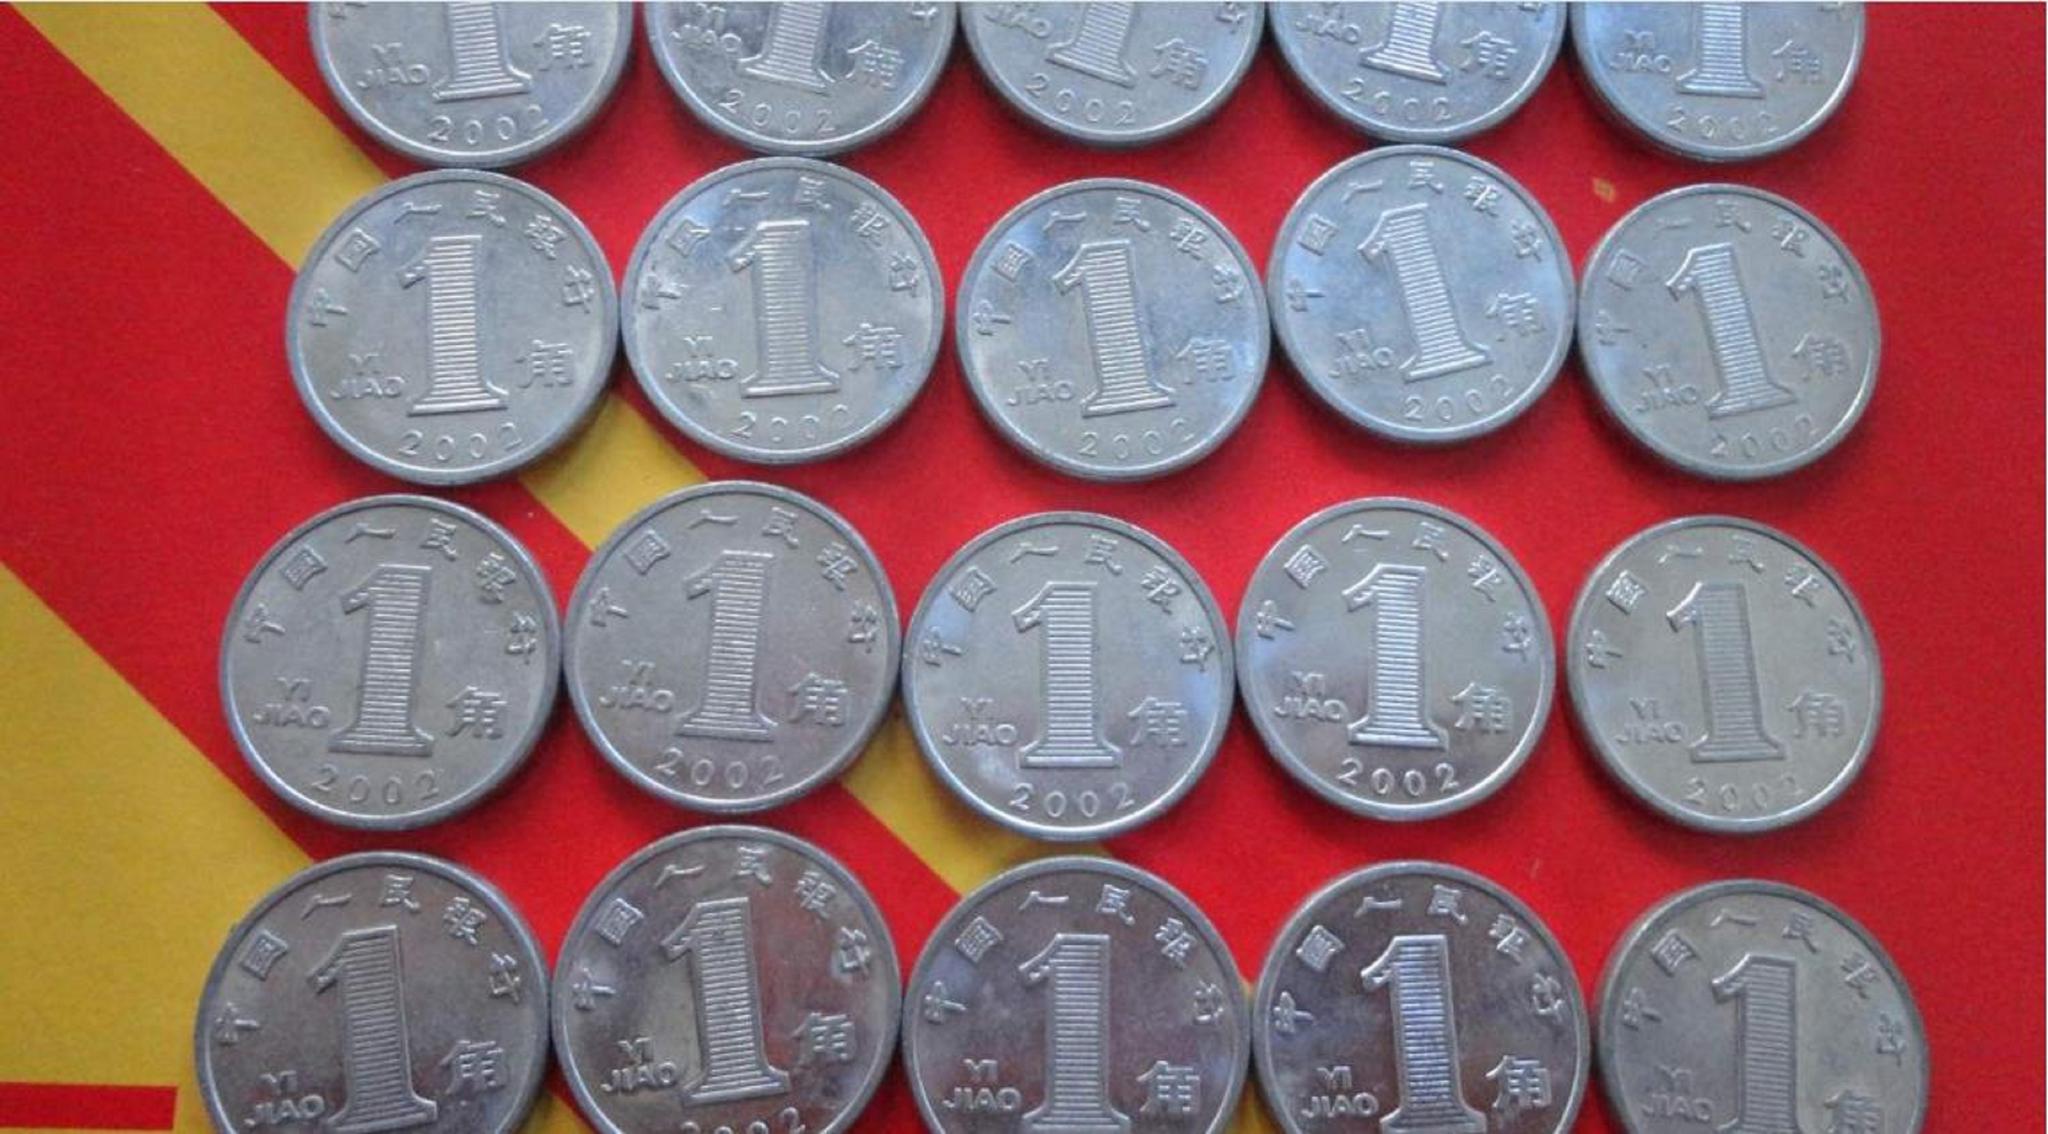 图片素材 : 钱, 现金, 货币, 硬币 2592x1944 - - 134837 - 素材中国, 高清壁纸 - PxHere摄影图库